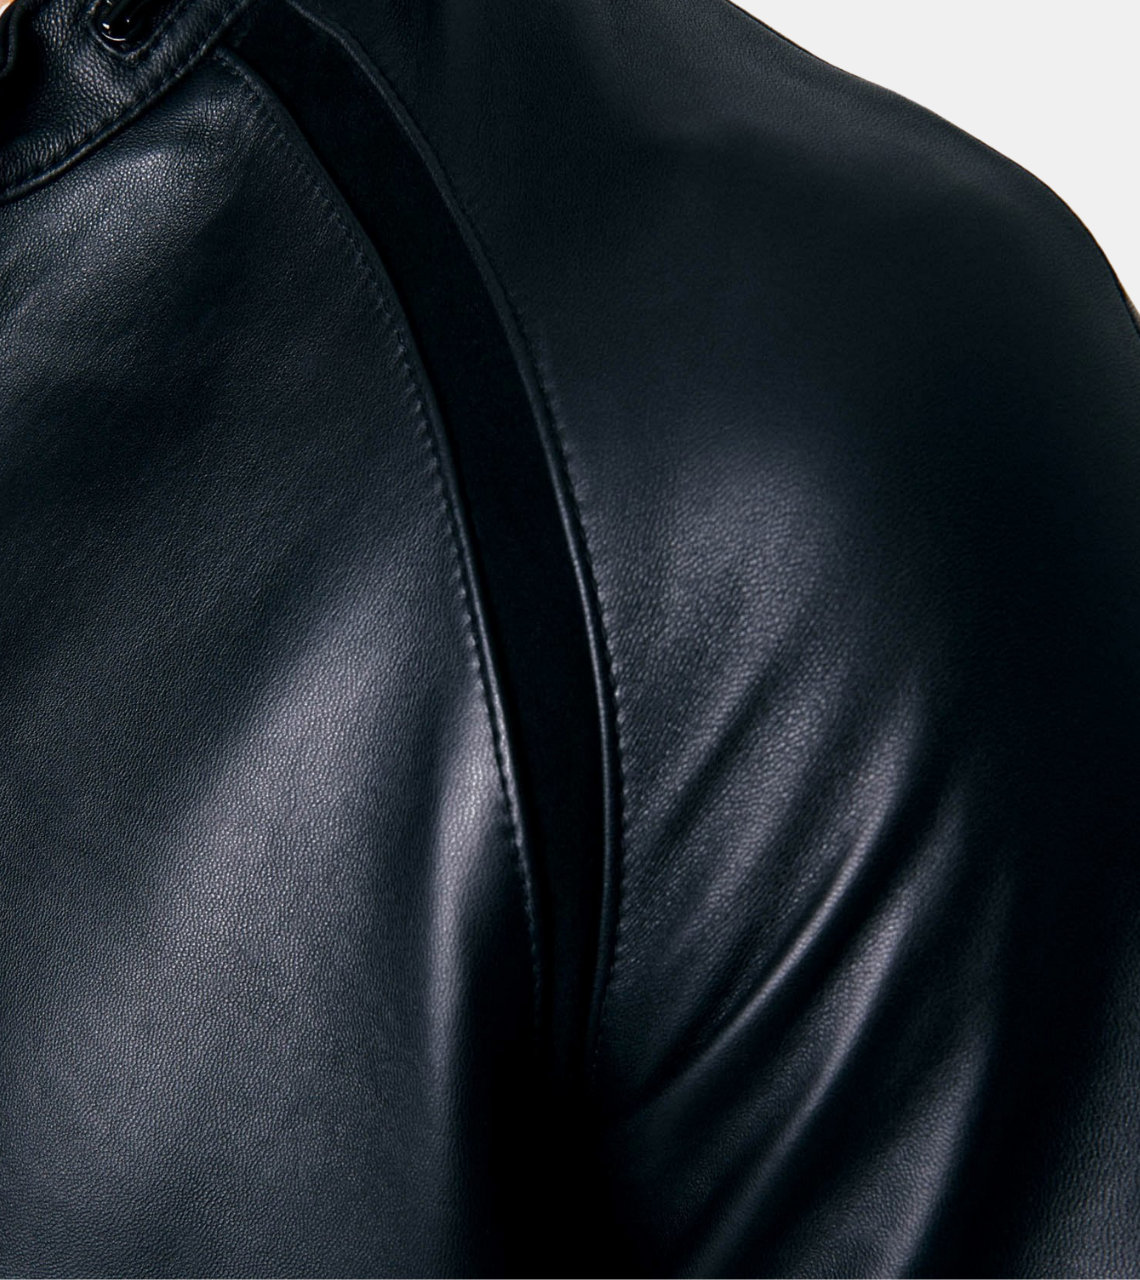 Grayson Men's Black Leather Jacket Shoulder